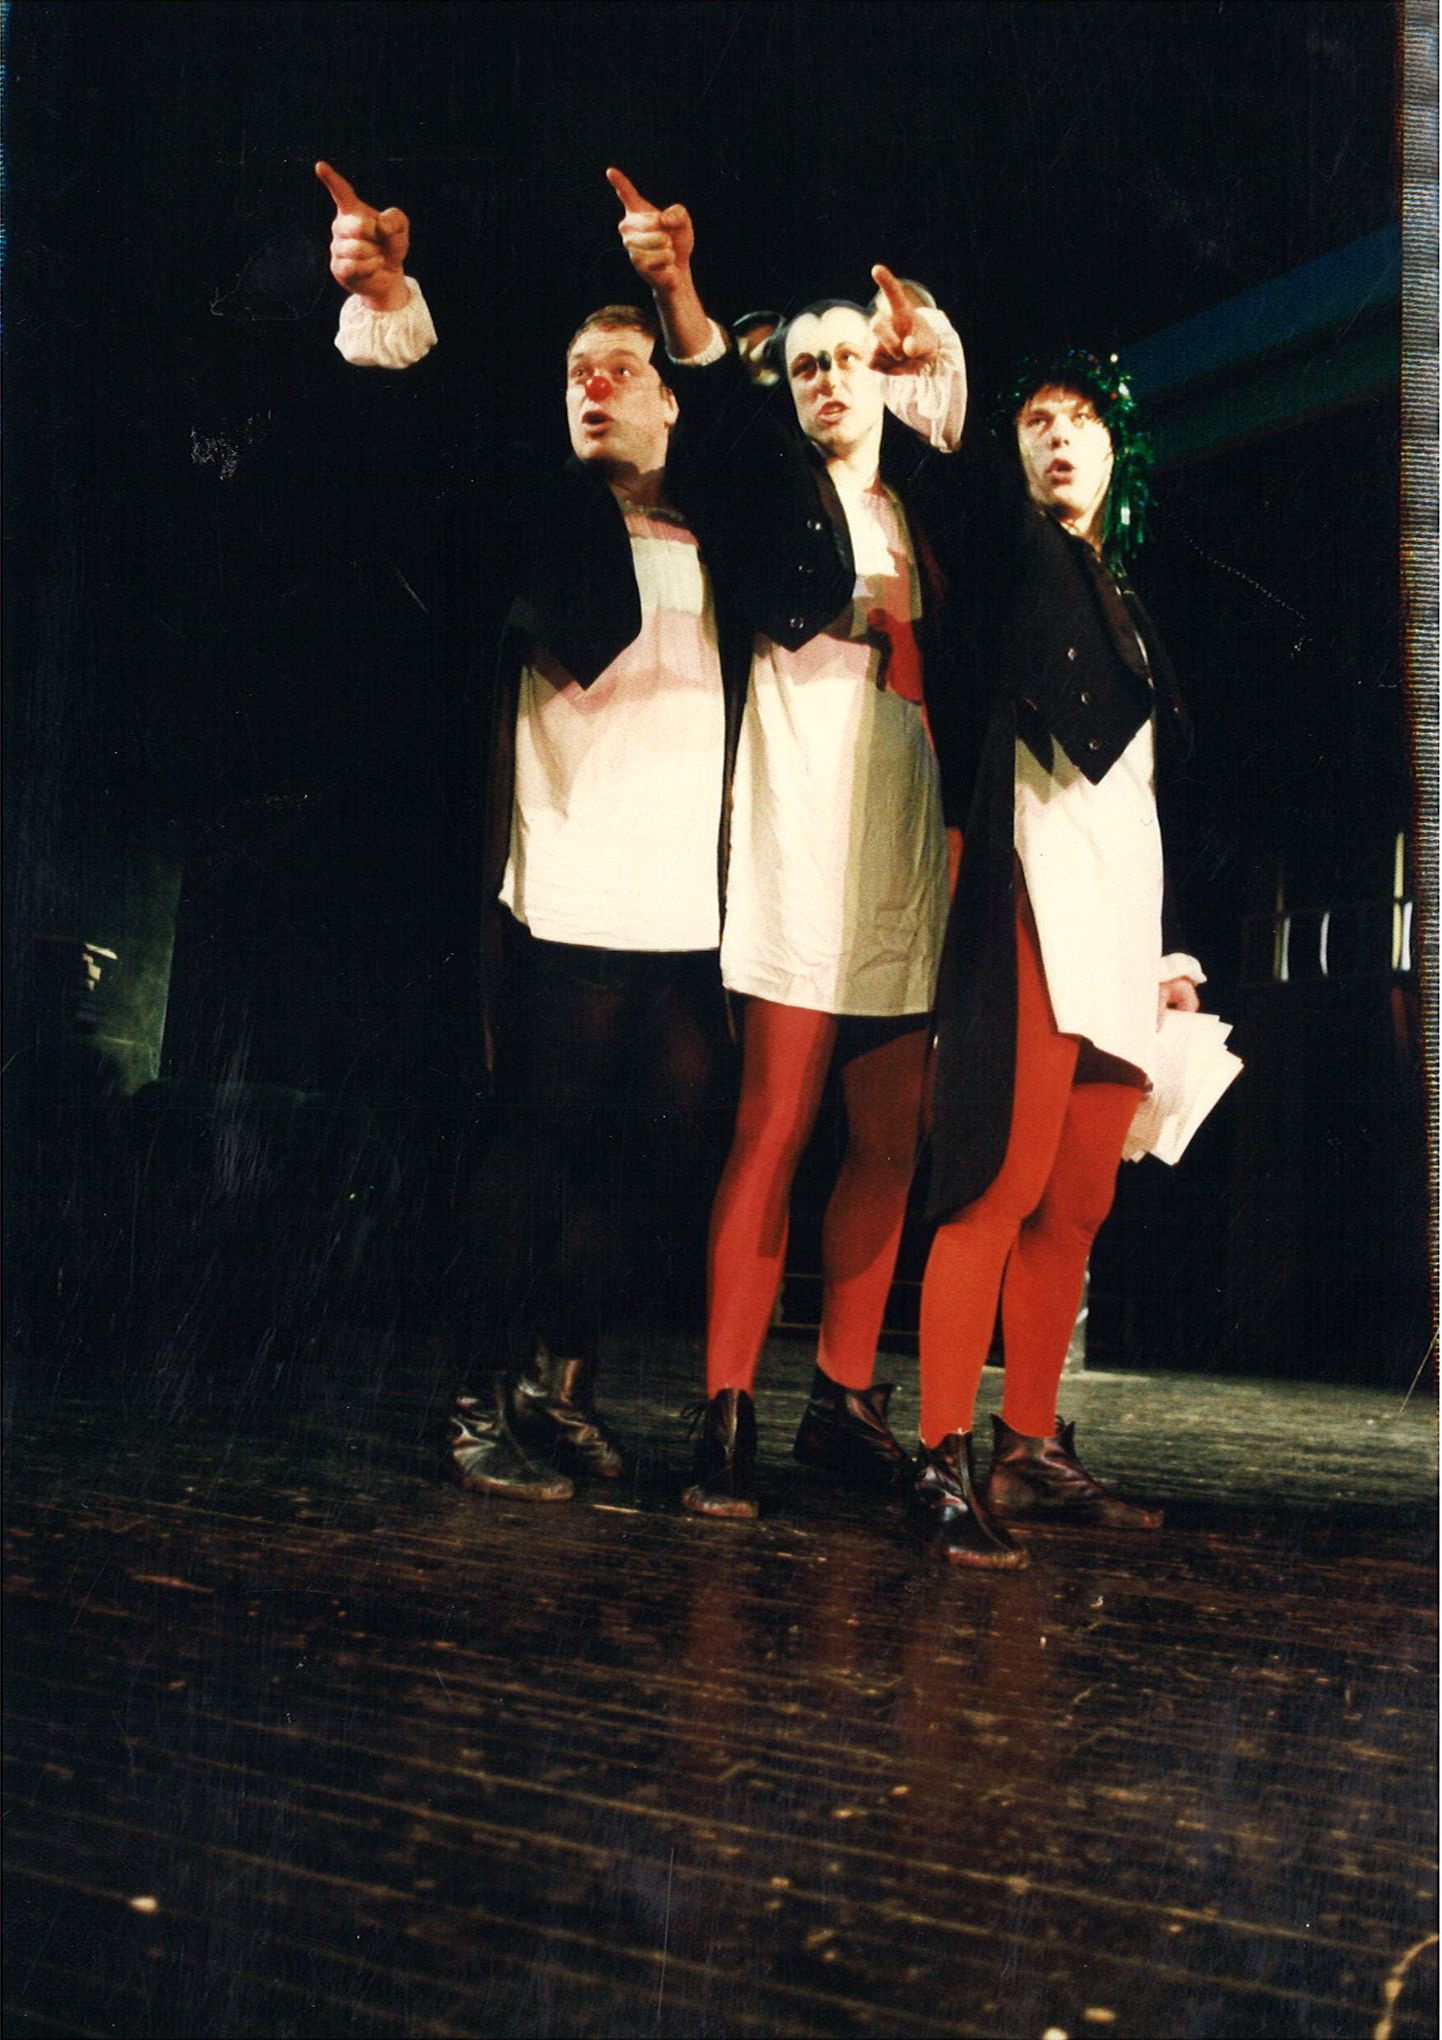 ROKKISID TÄIEGA: Tarvo Sõmer, Velvo Väli ja Ardo Ran Varres 1996. aasta lavastuses "Shakespeare'i kogutud teosed".